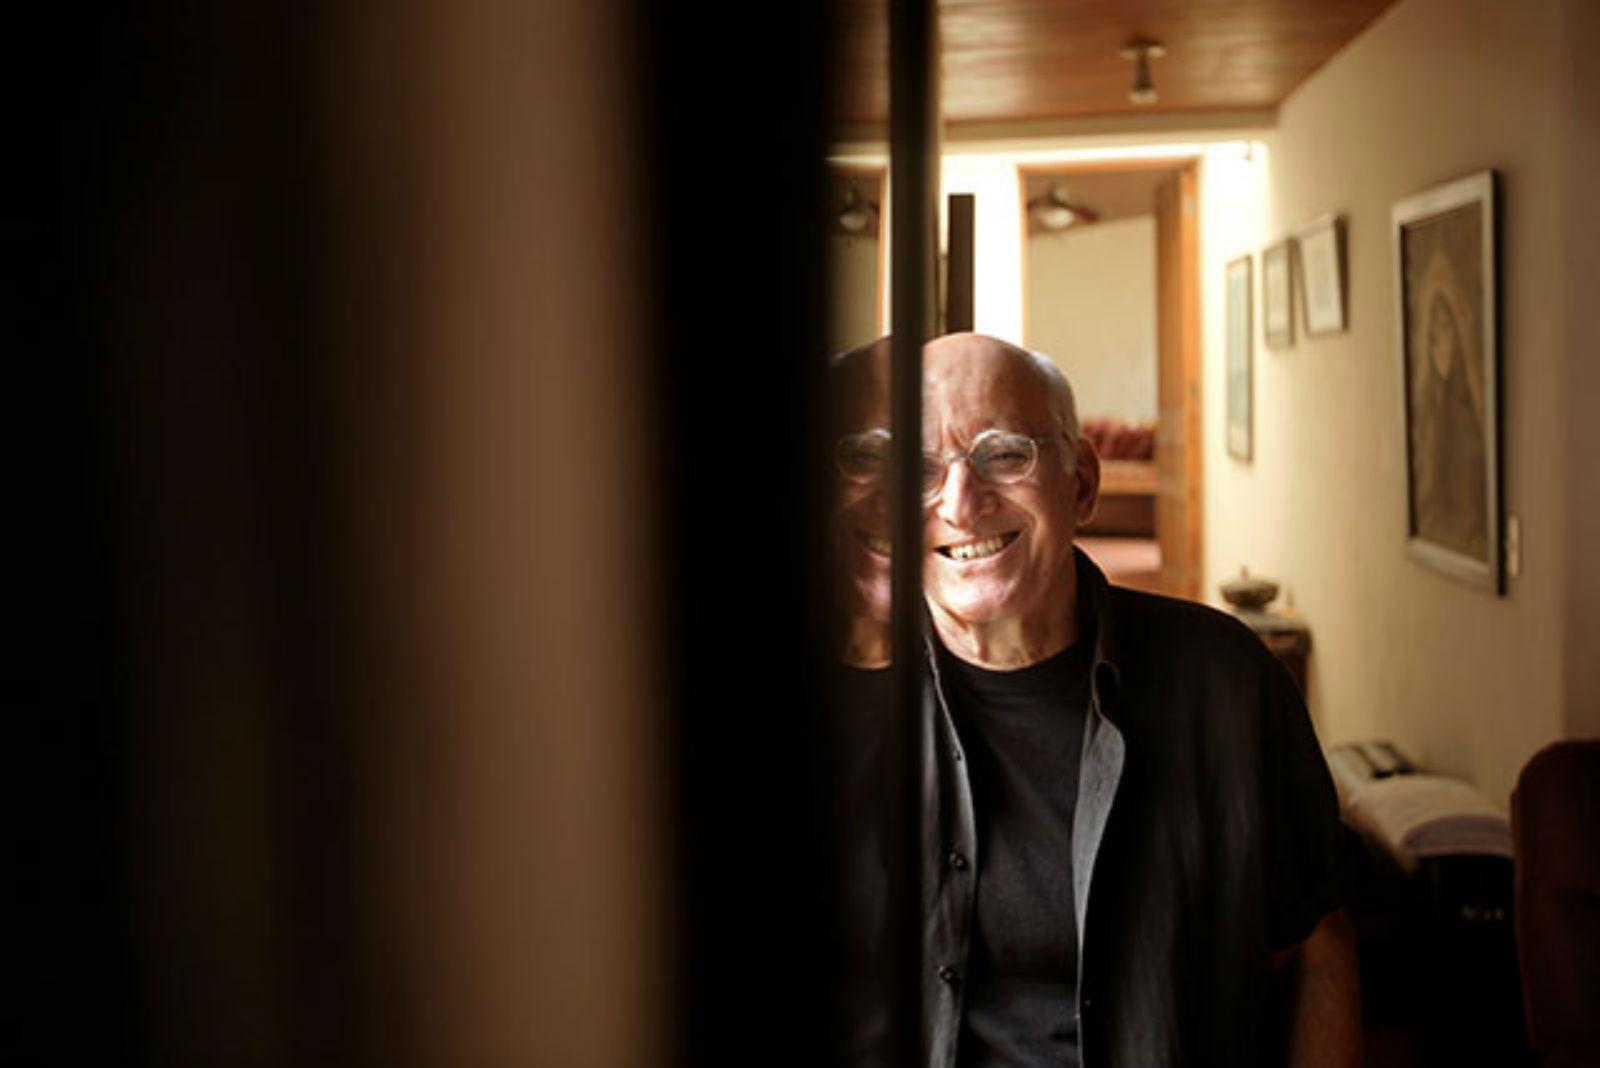 Roberto Salomón es director de teatro, director del teatro Luis Poma y Premio Nacional de Cultura 2014. Foto archivo El Faro.